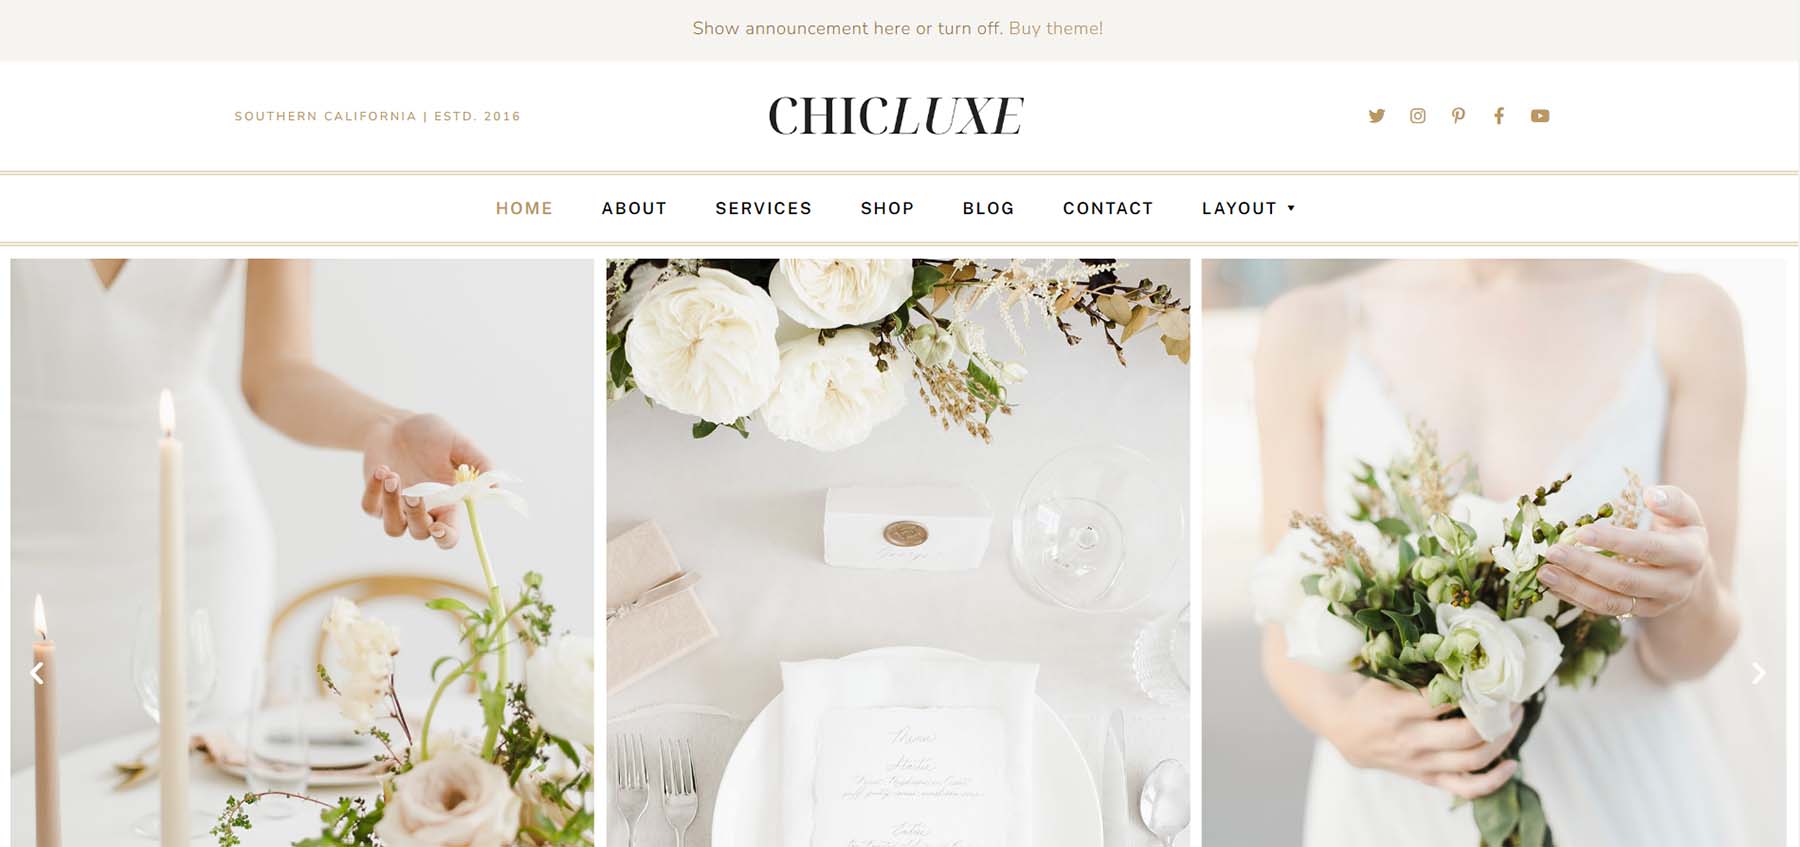 Düğün Profesyonelleri için en iyi WordPress Düğün Temalarından biri olan ChicLuxe